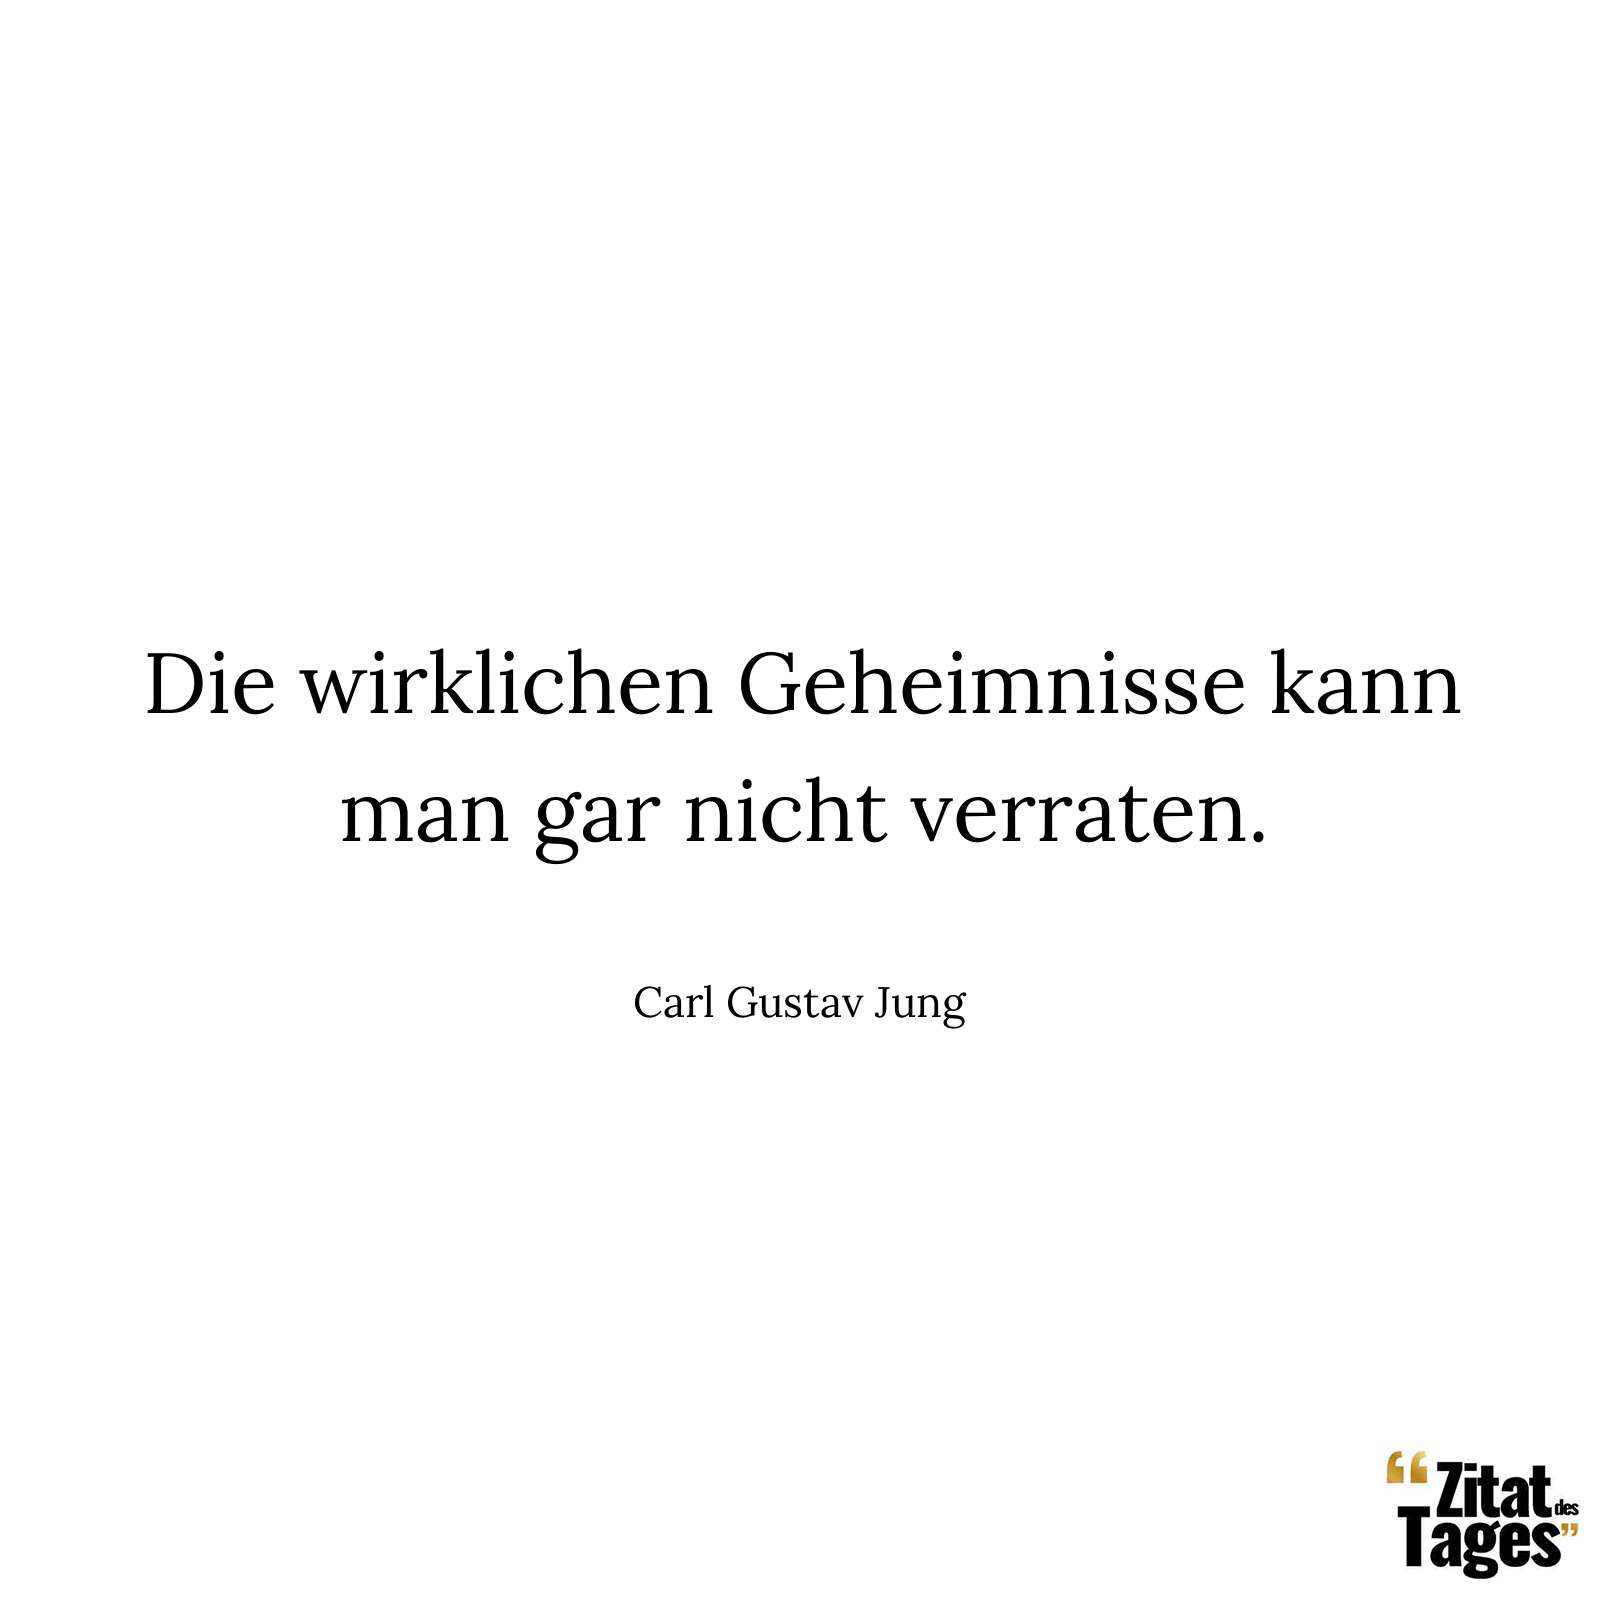 Die wirklichen Geheimnisse kann man gar nicht verraten. - Carl Gustav Jung